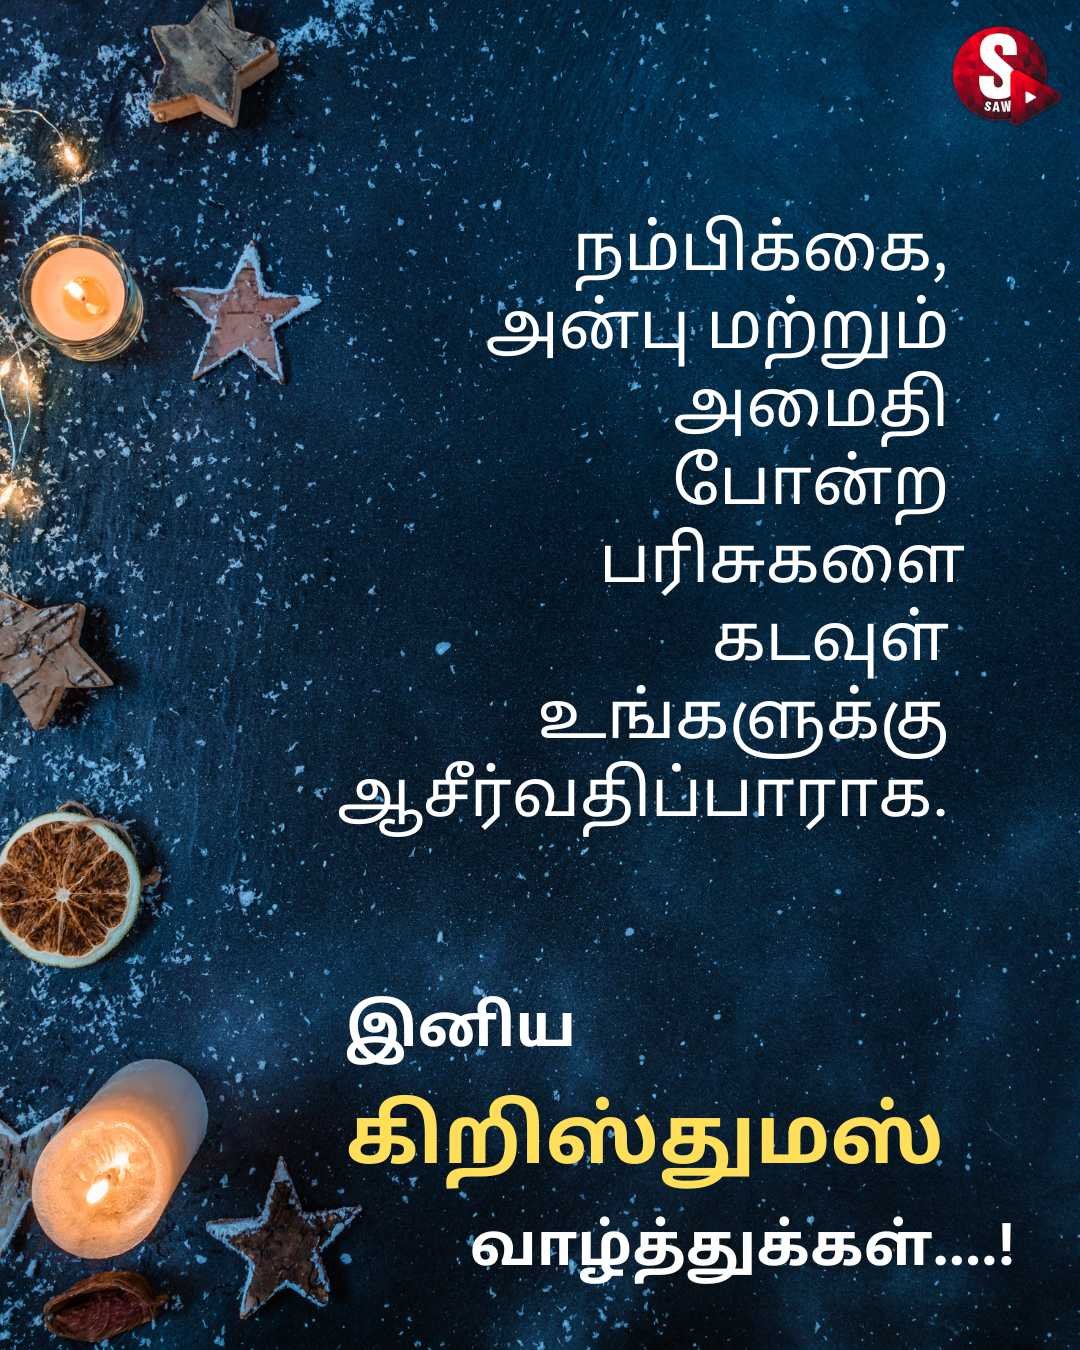 இனிய கிறிஸ்துமஸ் தின நல்வாழ்த்துக்கள் அனைவருக்கும் | Christmas Wishes in Tamil | Christmas Quotes in Tamil